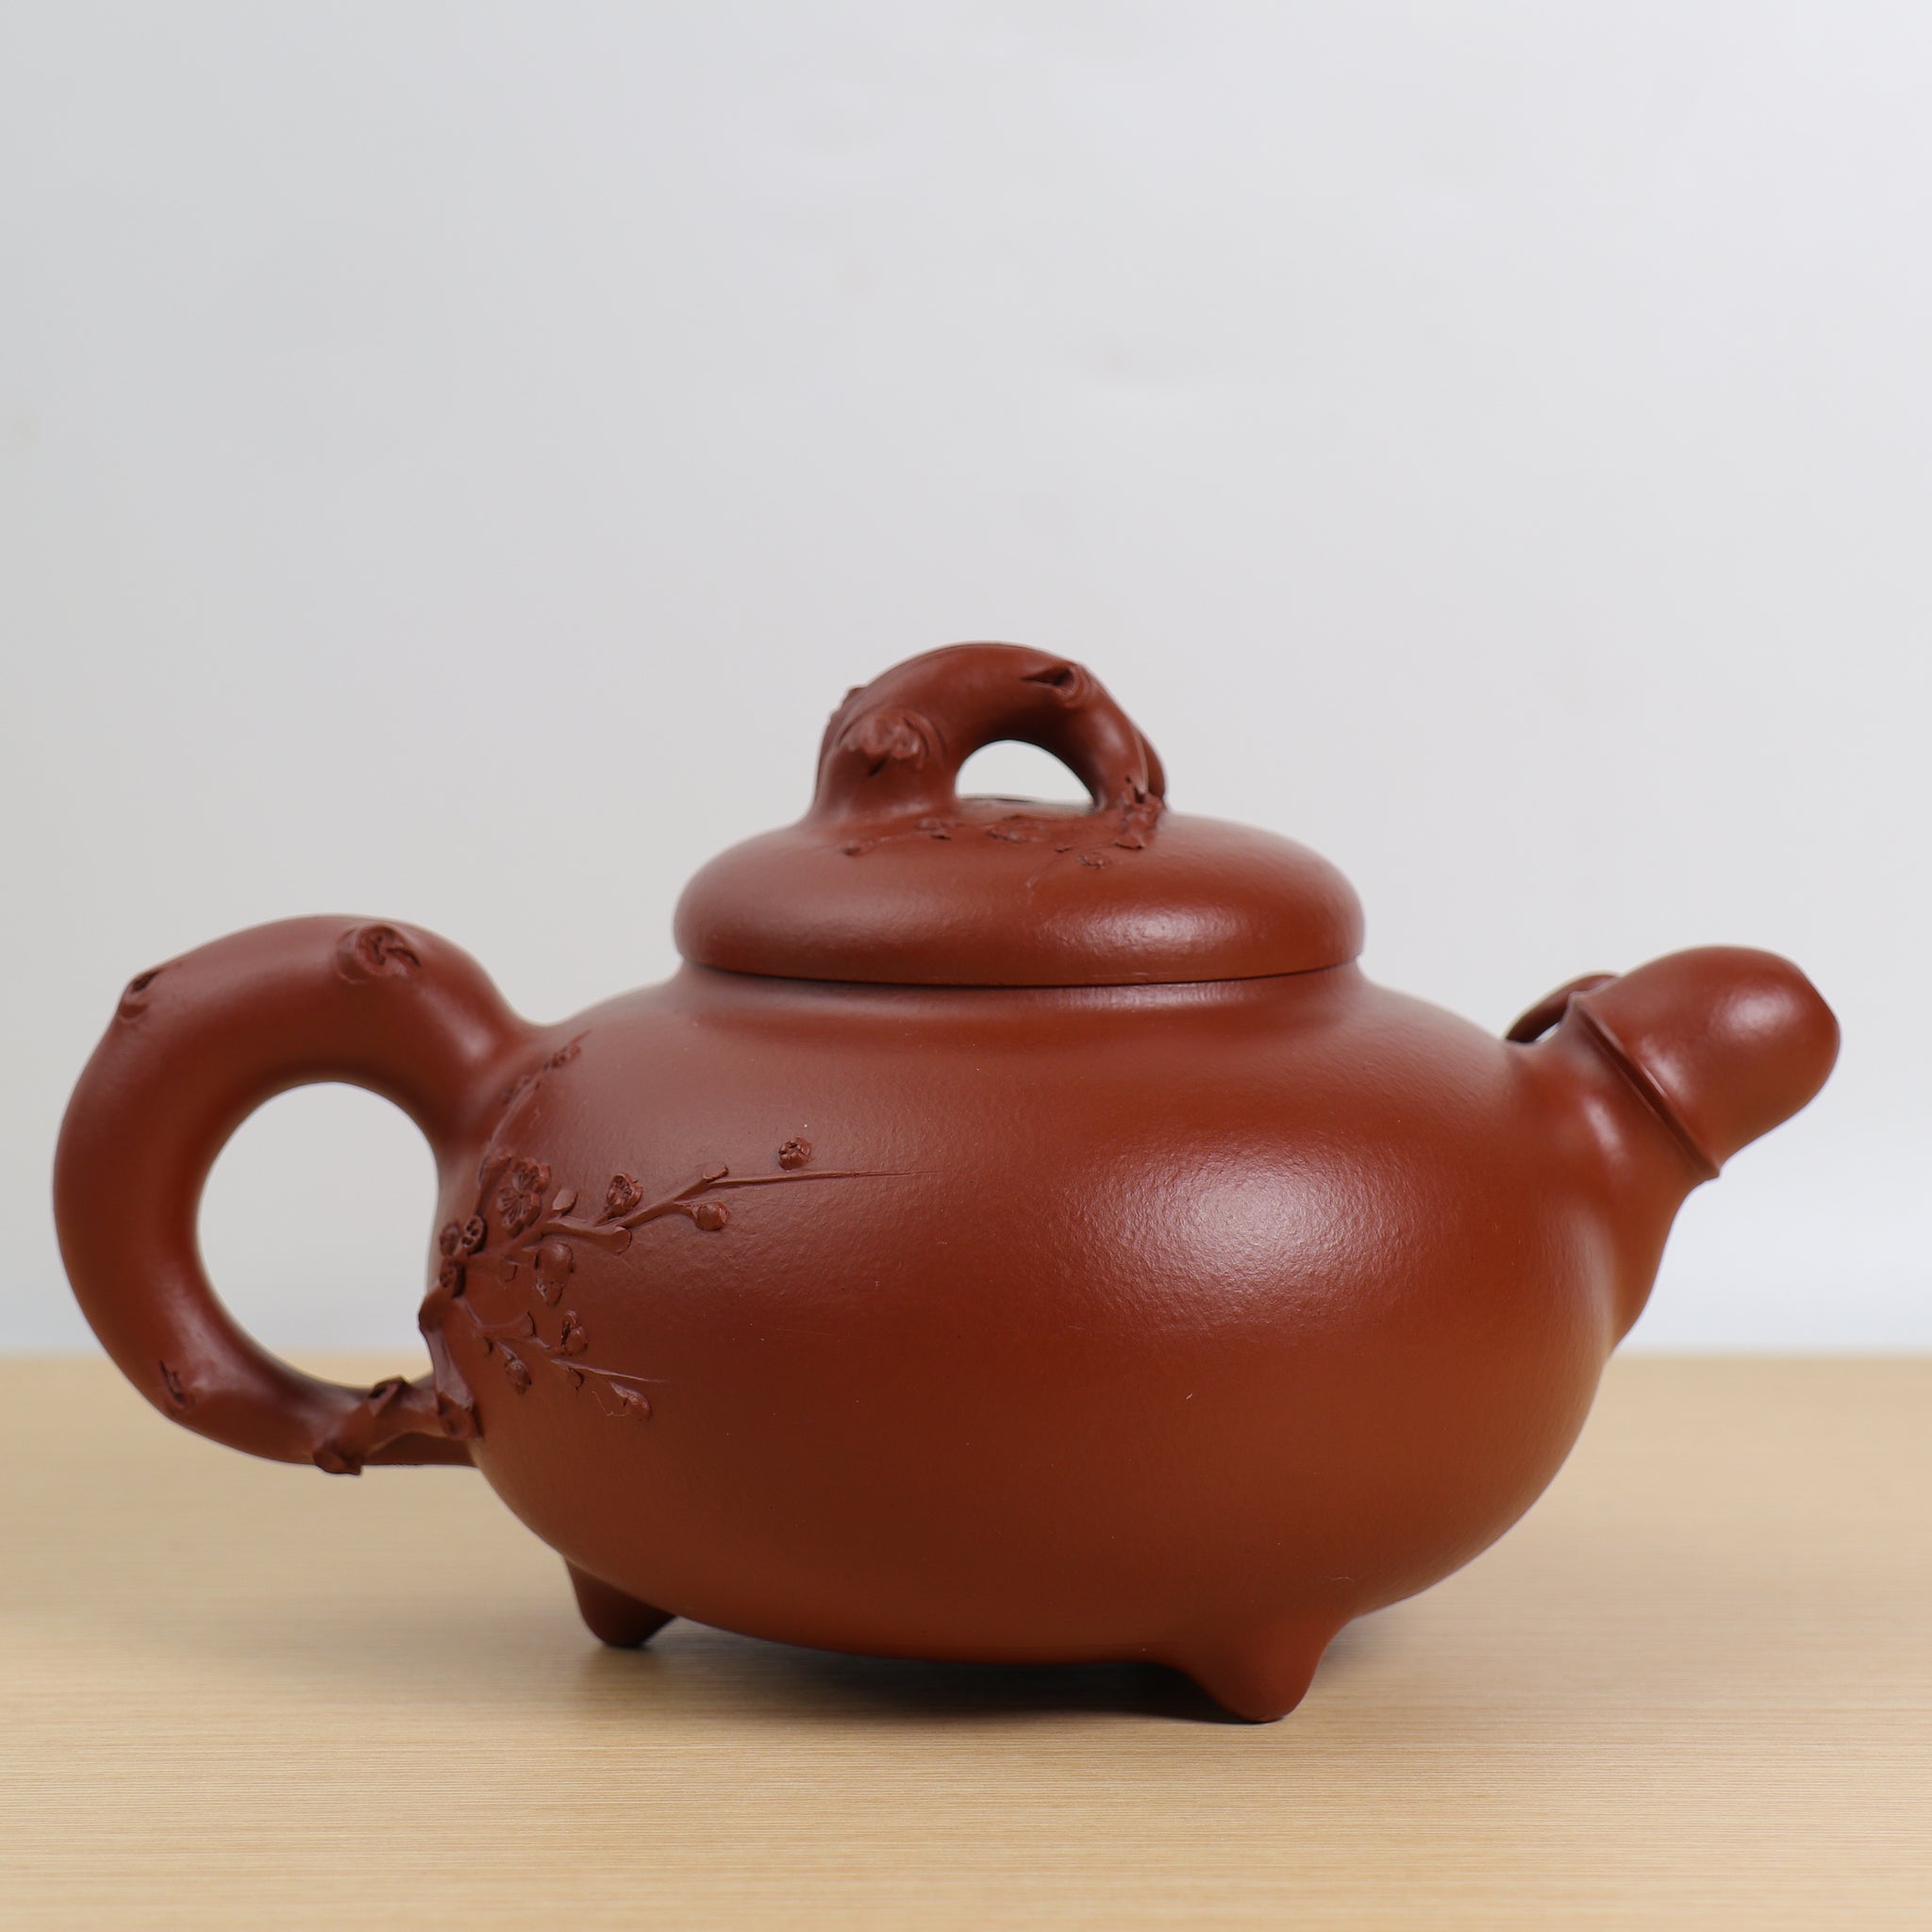 【梅竹雙清】大紅袍仿生紫砂茶壺